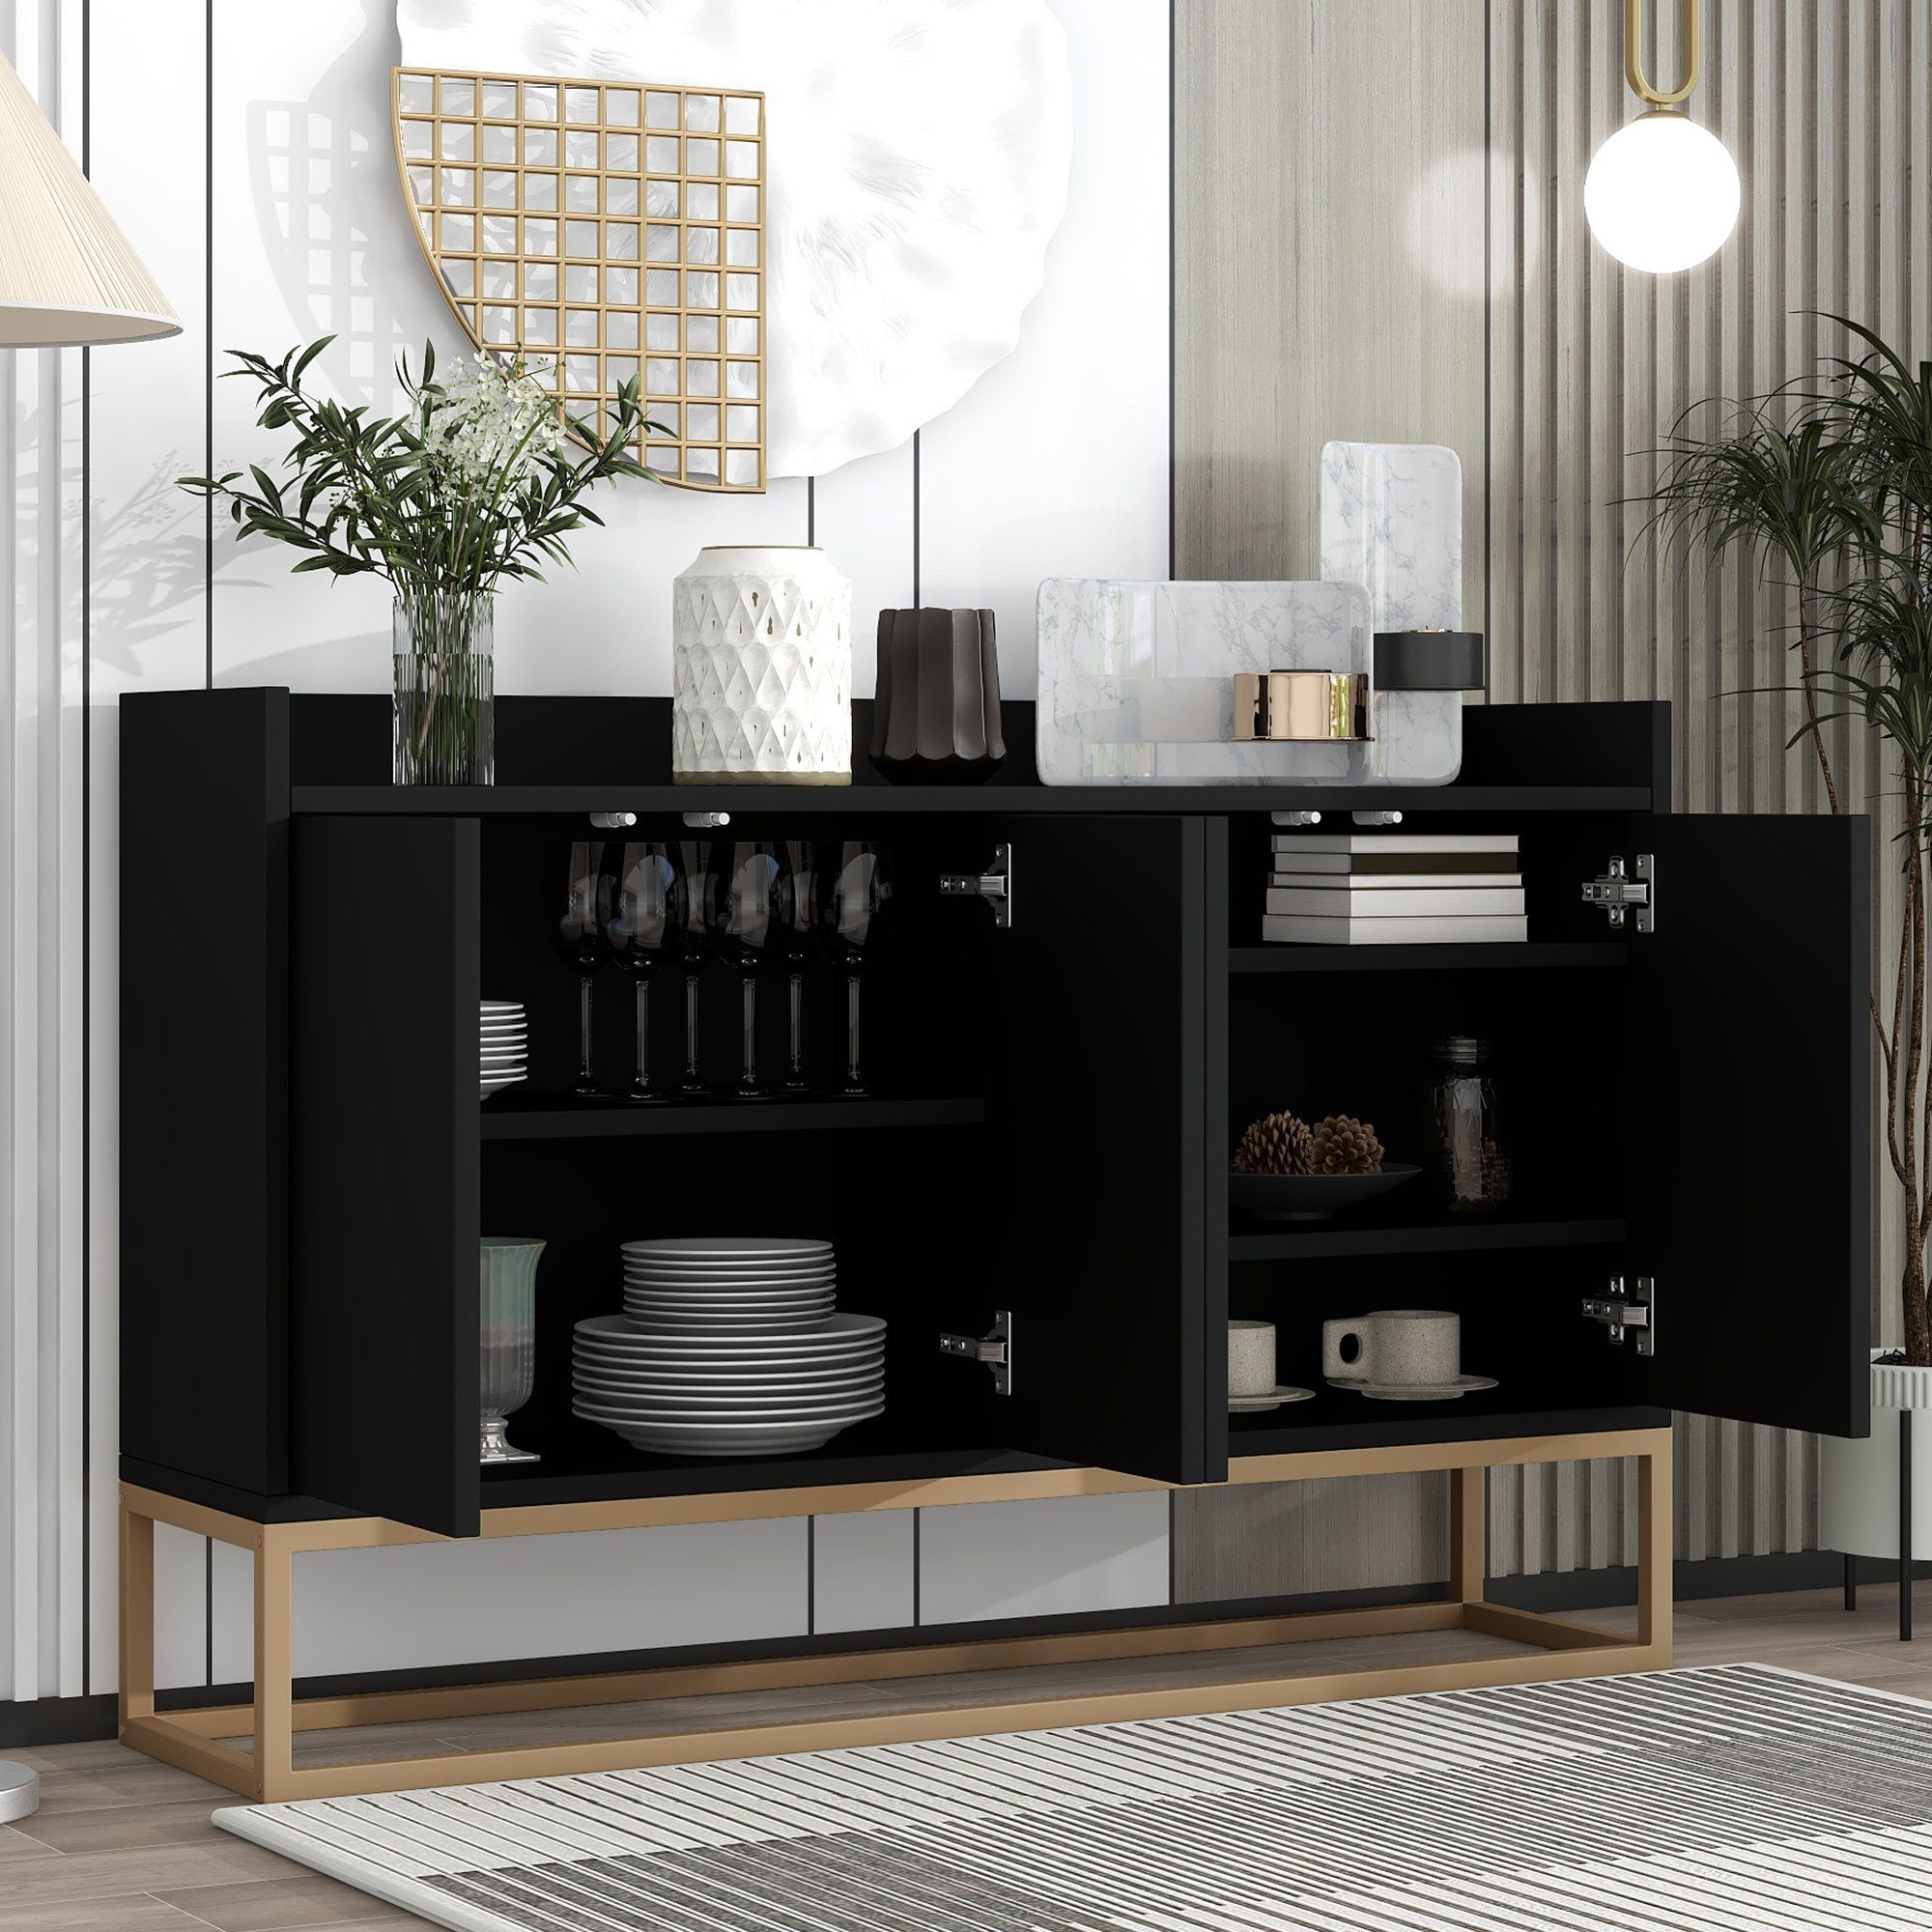 OKWISH Sideboard Anrichte, Modernes Küchenschrank im minimalistischen Stil 4-türiger (griffloser Buffetschrank für Esszimmer, Wohnzimmer, Küche) schwarz